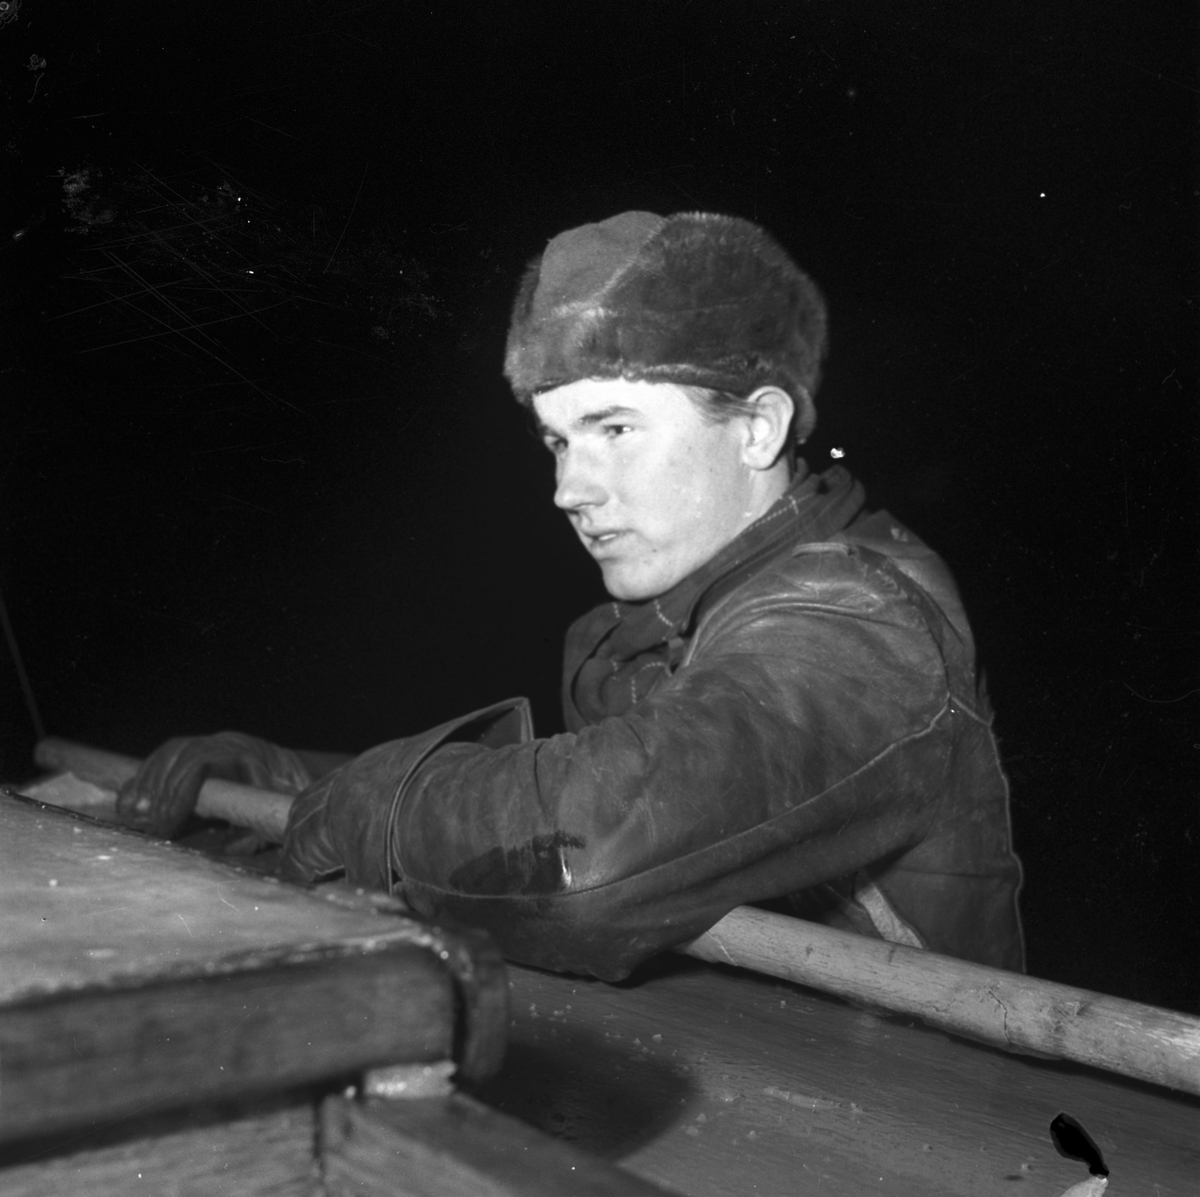 Böna Lotsstation. 8 januari 1954. Karl Andersson
Storm över Gävle.